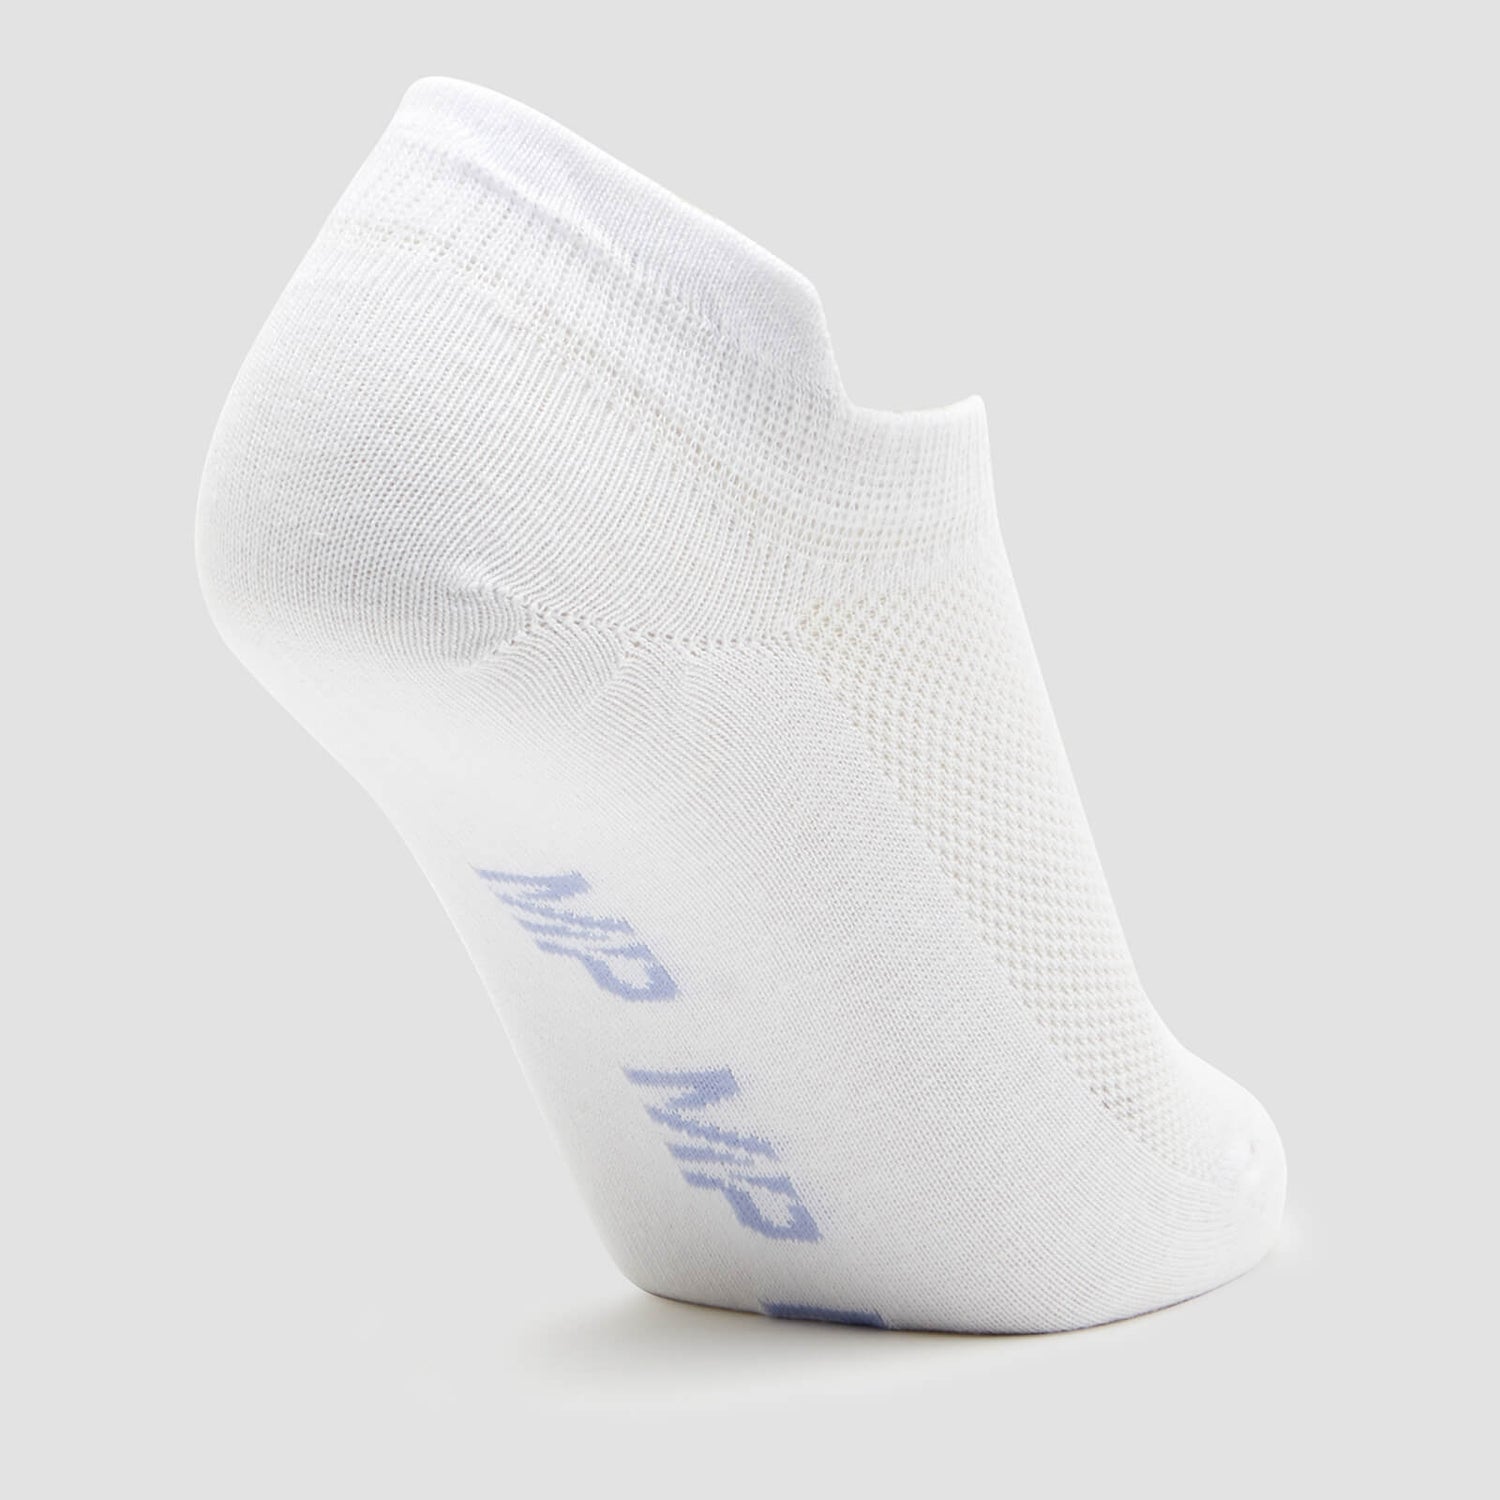 MP Women's Ankle Socks - White/Neon (3 Pack)